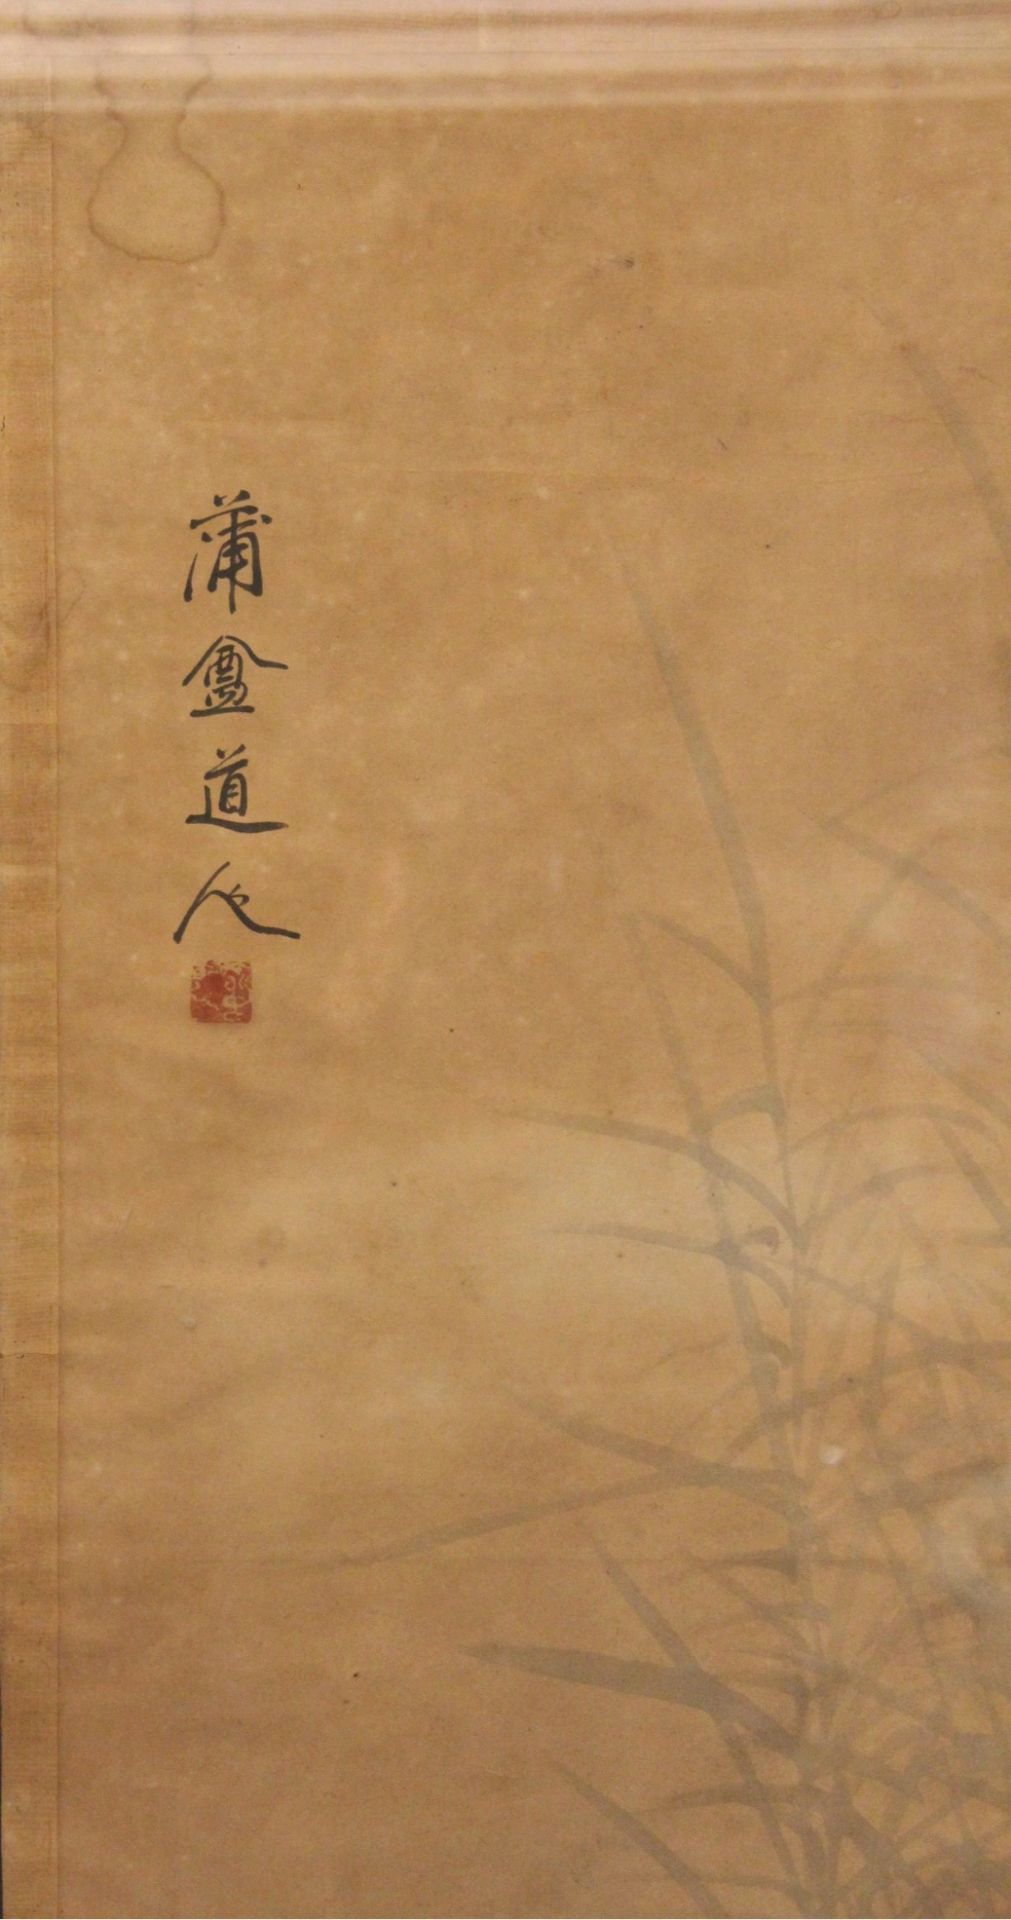 Tuschemalerei im Stil von Qi Baishi - Image 2 of 2